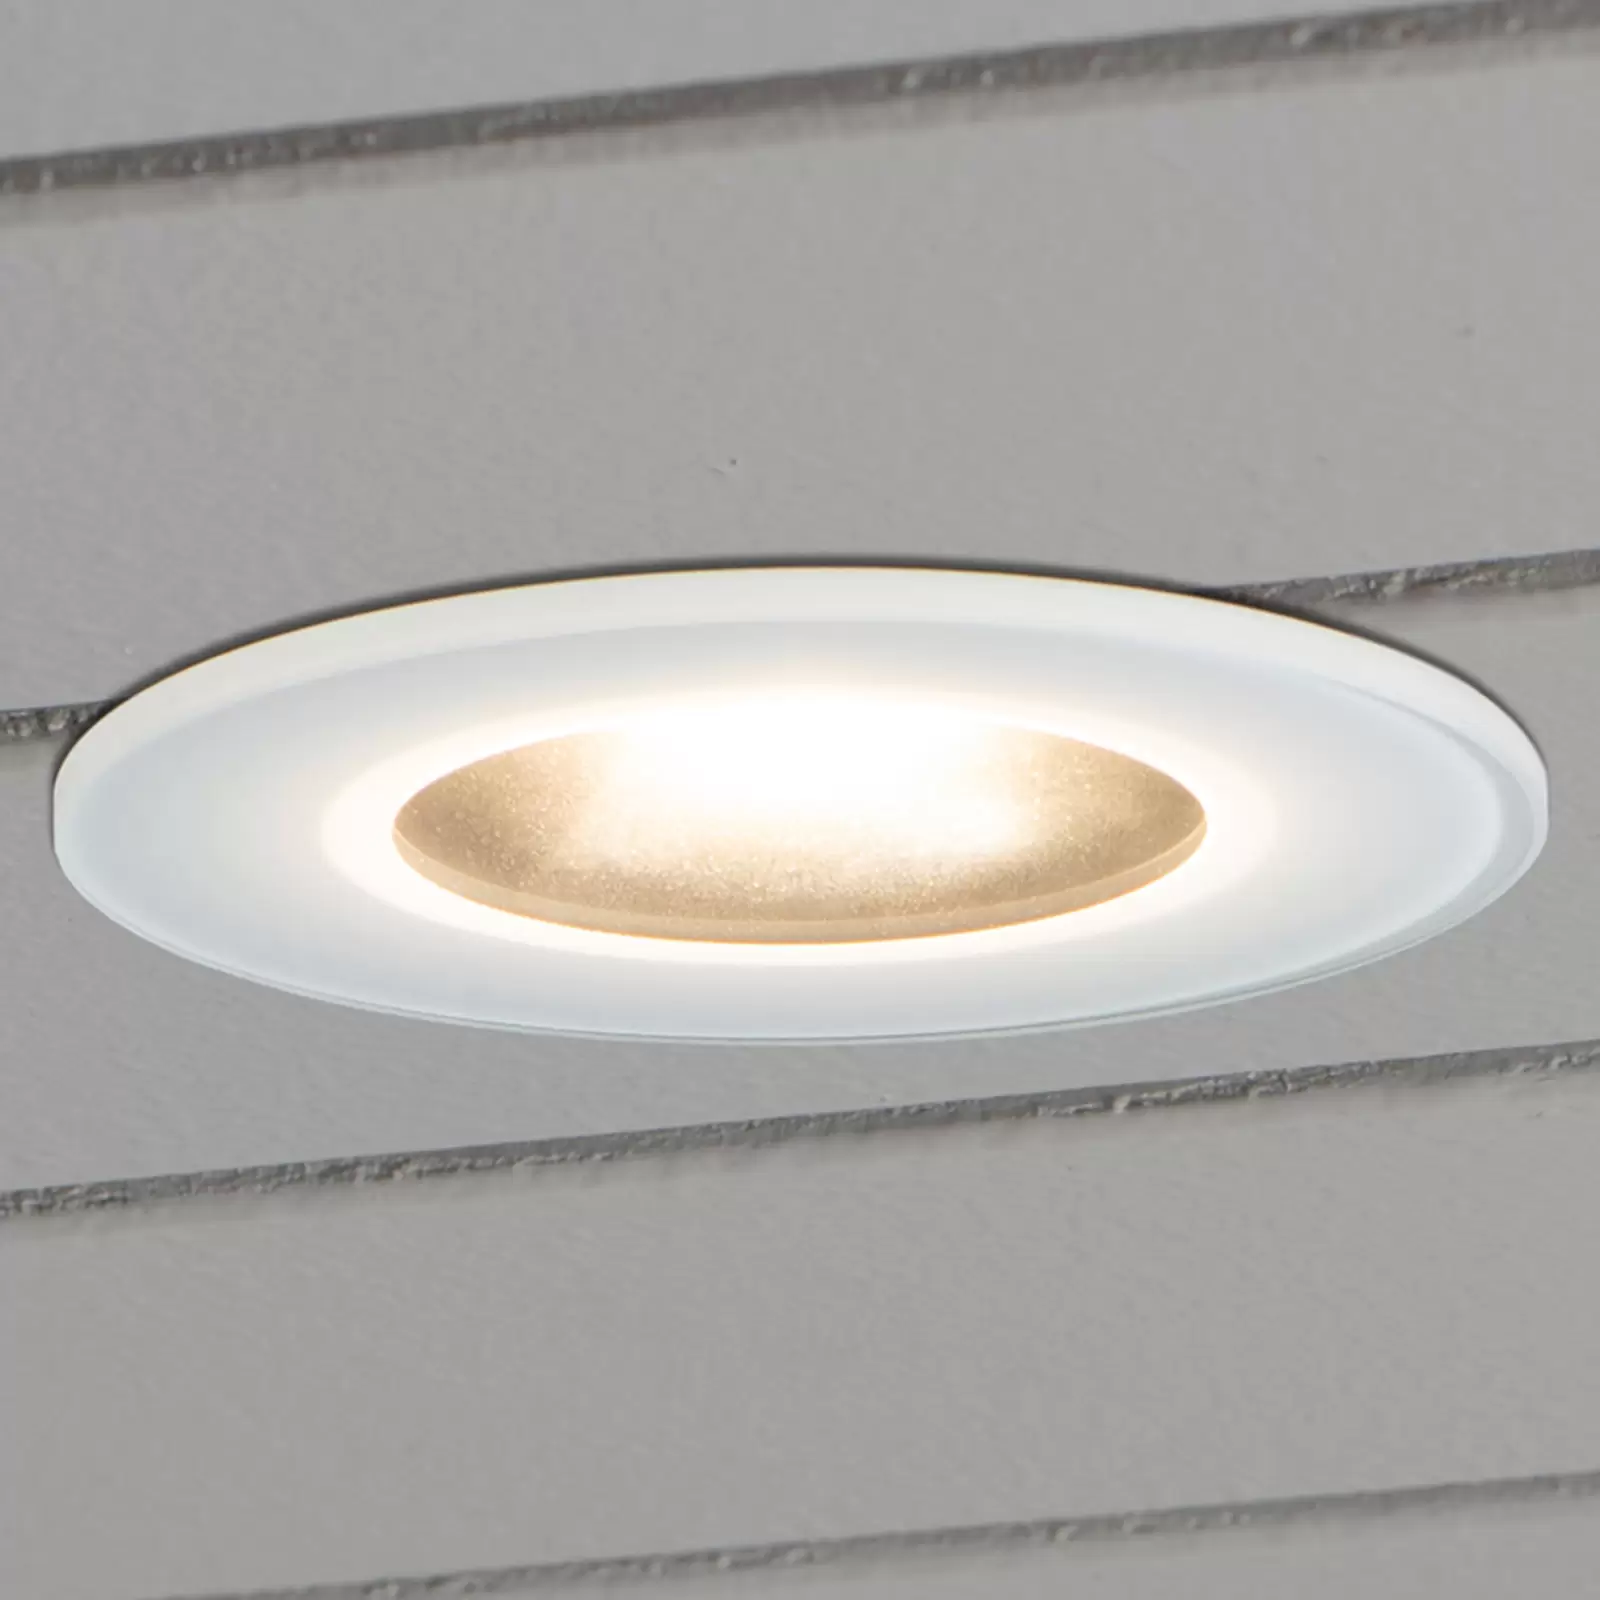 LED lámpa 7875 mennyezeti kültéri, fehér